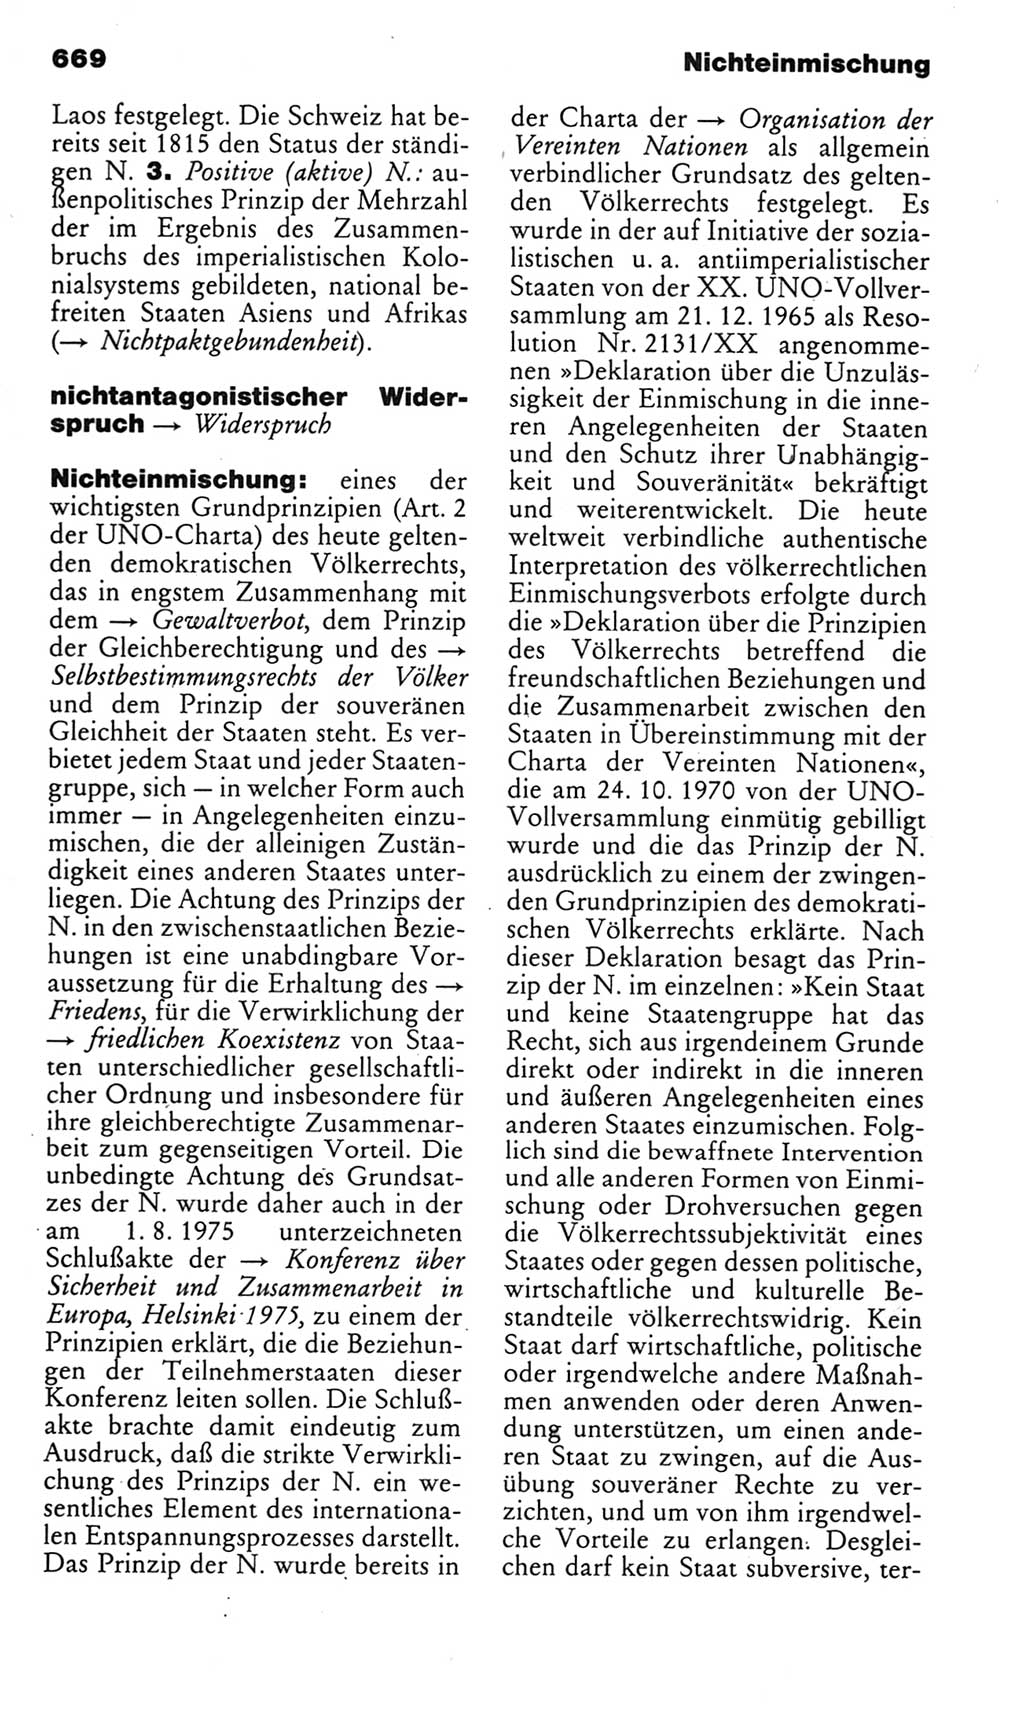 Kleines politisches Wörterbuch [Deutsche Demokratische Republik (DDR)] 1985, Seite 669 (Kl. pol. Wb. DDR 1985, S. 669)